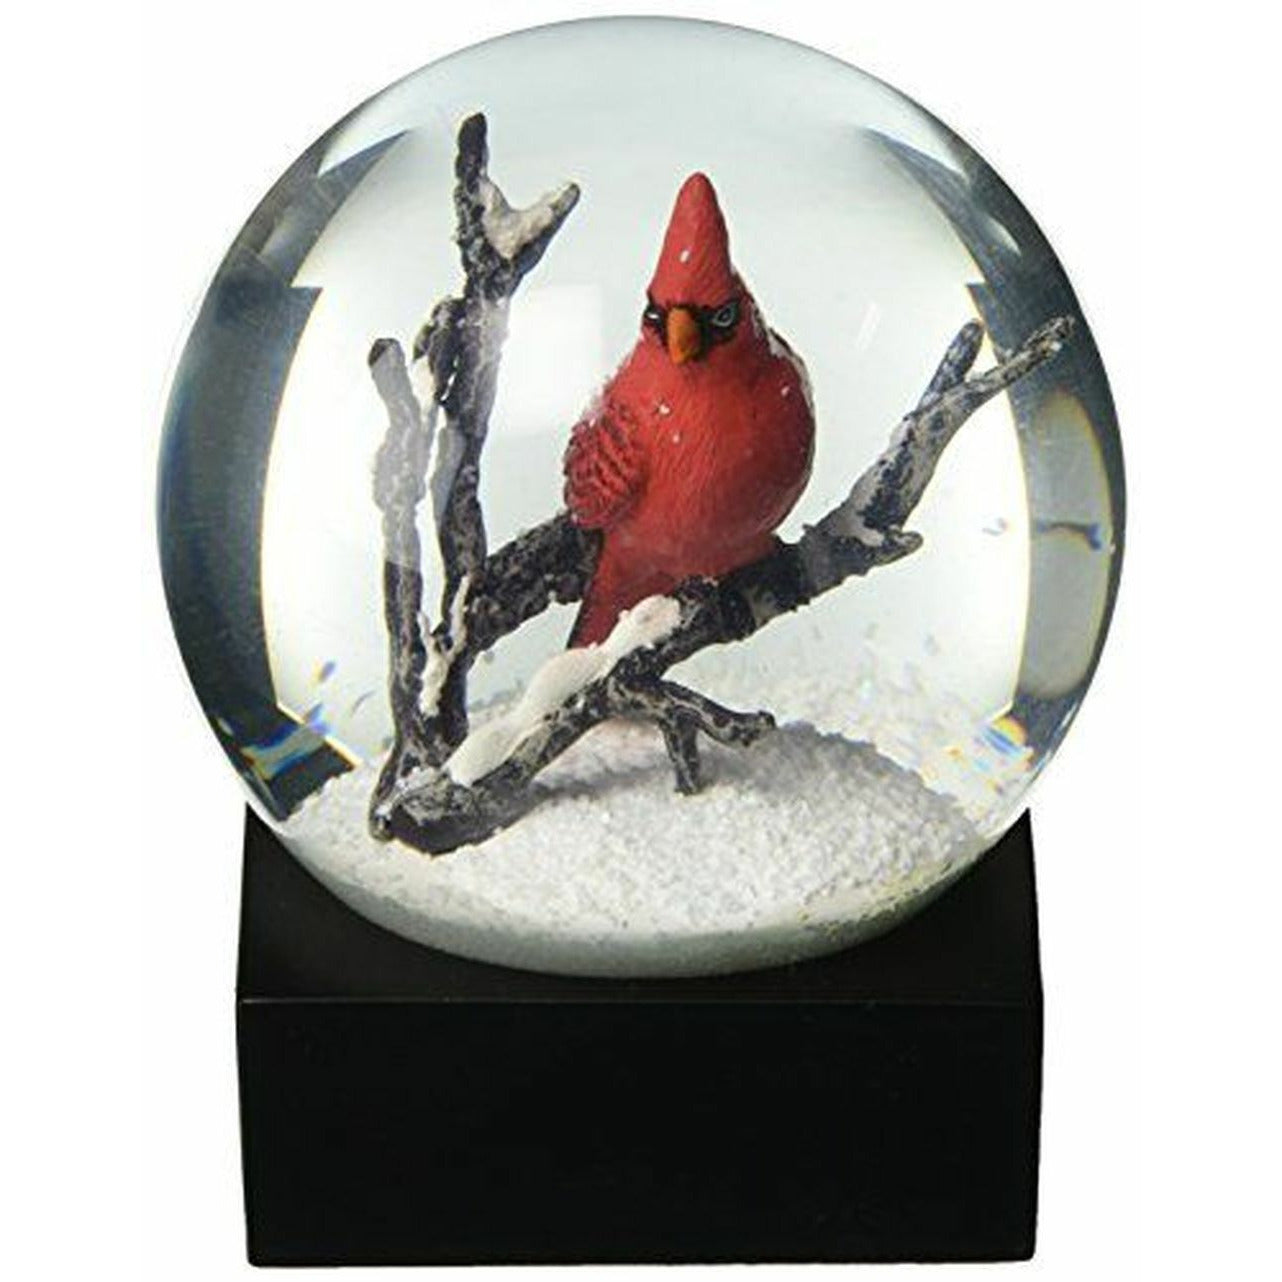 Cool Snow Globes Kardinal sjungande snöboll